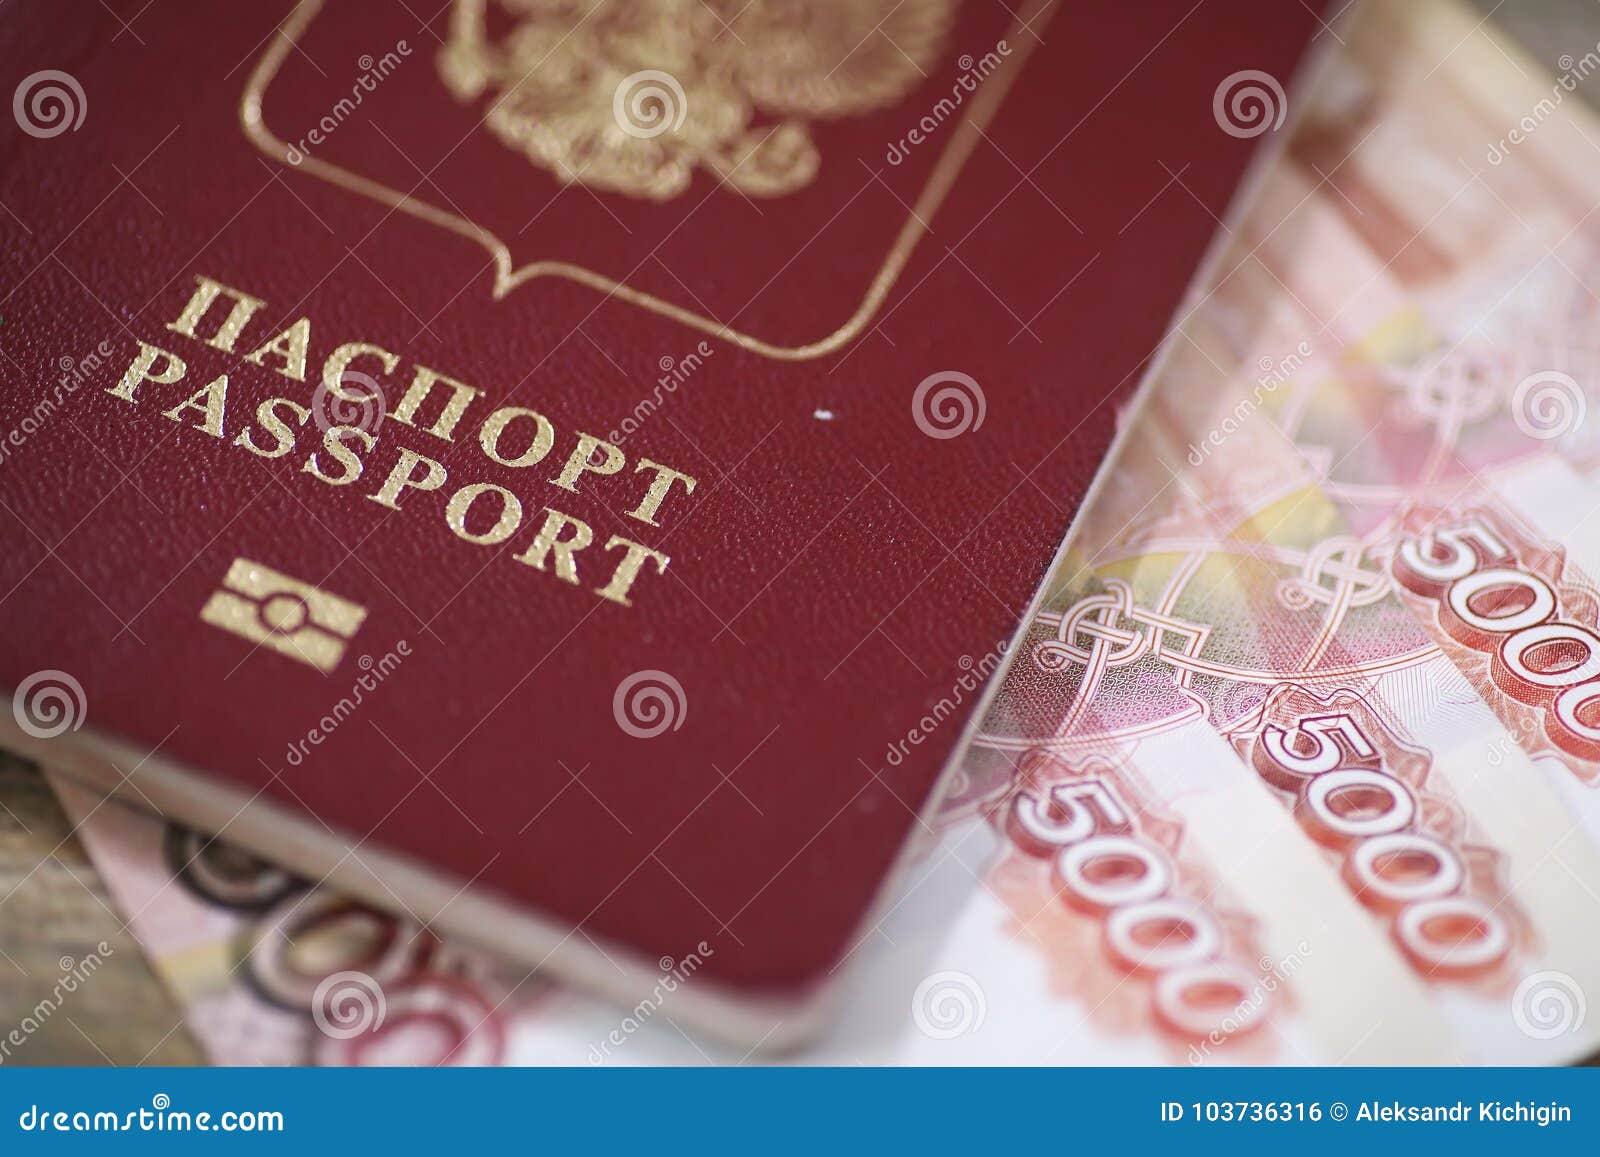 Микрозайм по паспорту в Самаре без проверки ки